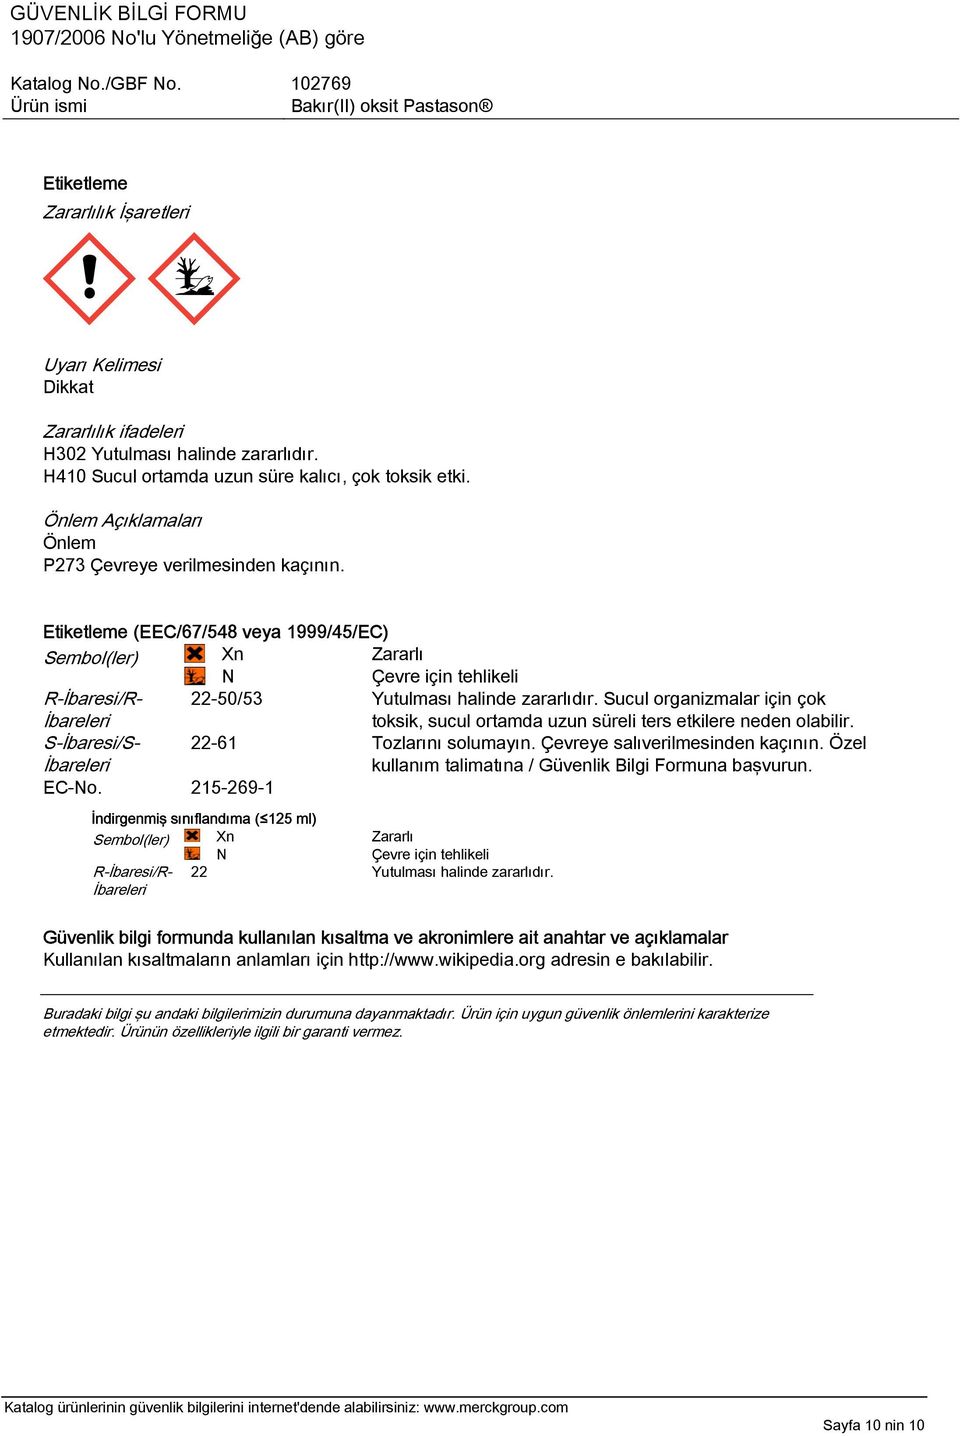 Etiketleme (EEC/67/548 veya 1999/45/EC) Sembol(ler) Xn N Zararlı Çevre için tehlikeli R-İbaresi/R- İbareleri 22-50/53 Yutulması halinde zararlıdır.